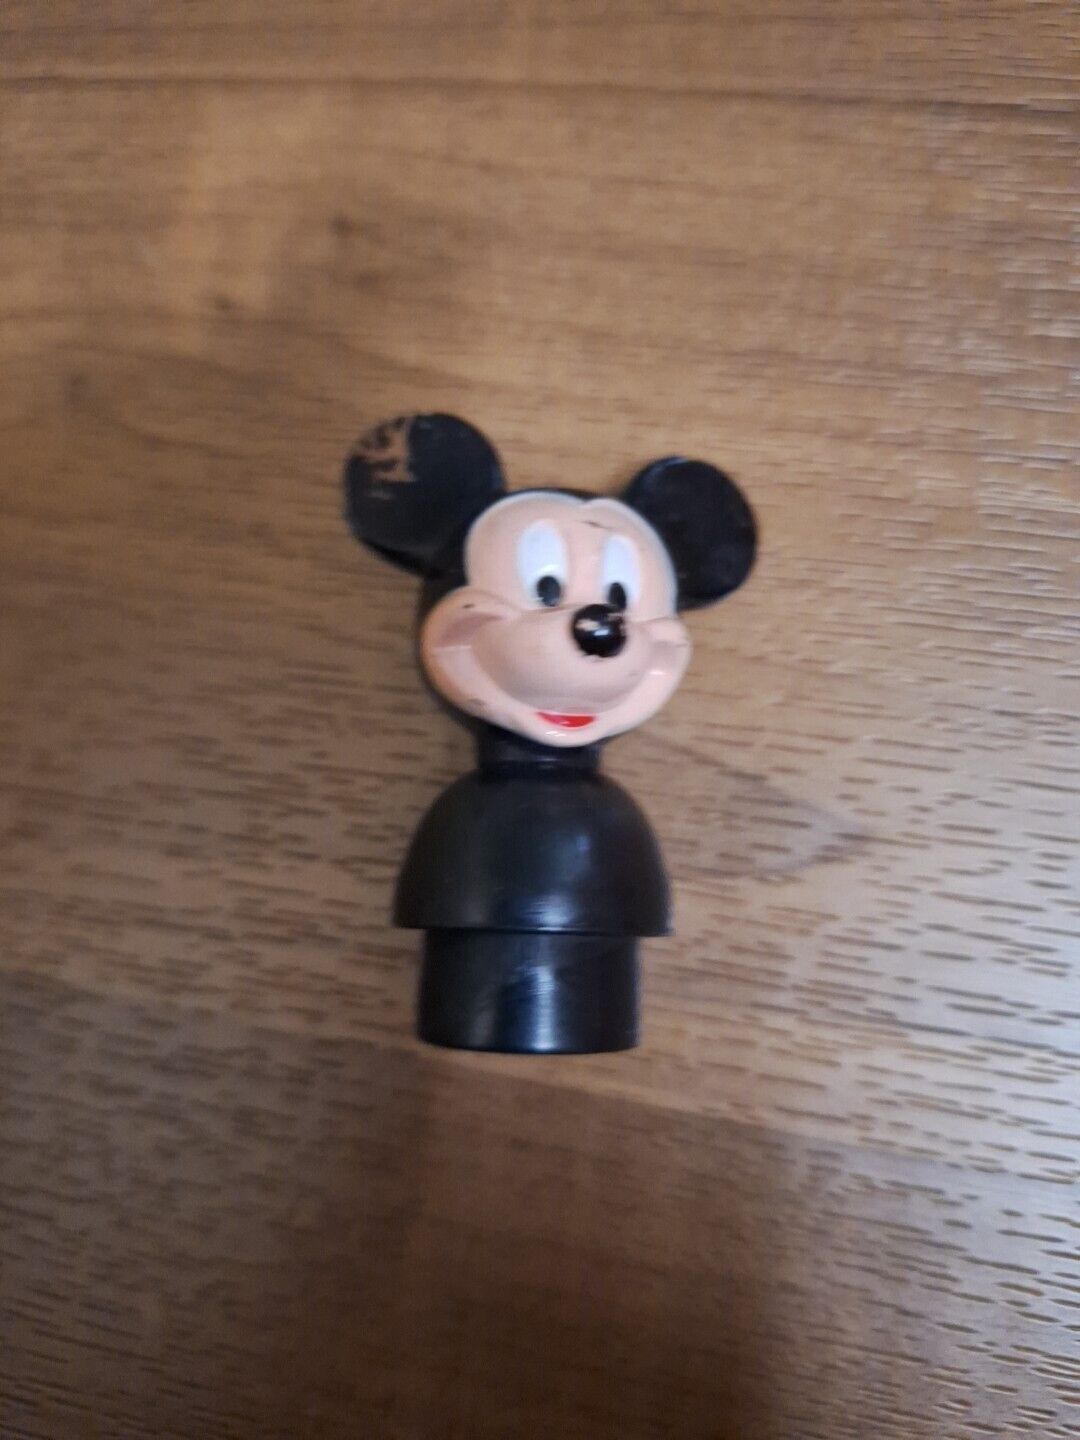 Vintage Mickey Mouse figurine